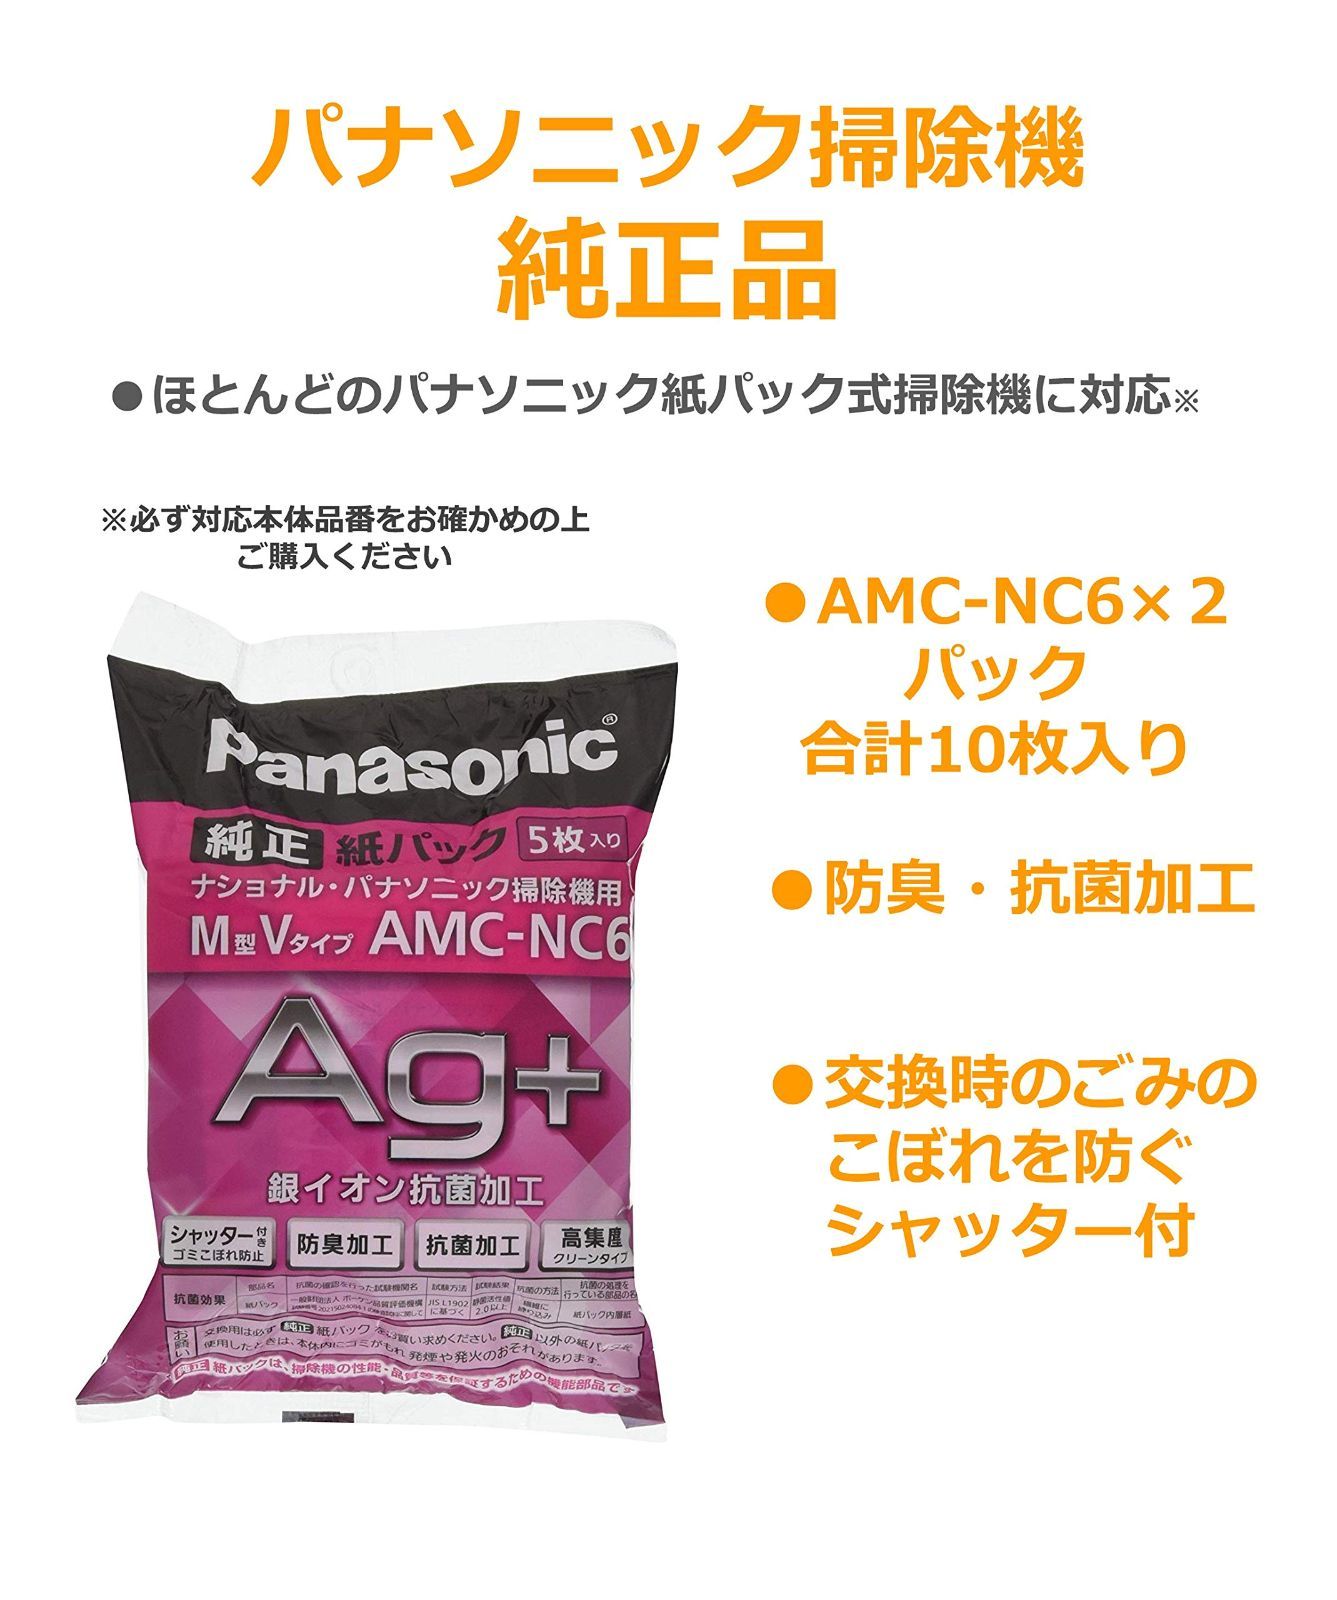 パナソニック Panasonic 掃除機用紙パック 5枚入 M型Vタイプ AM